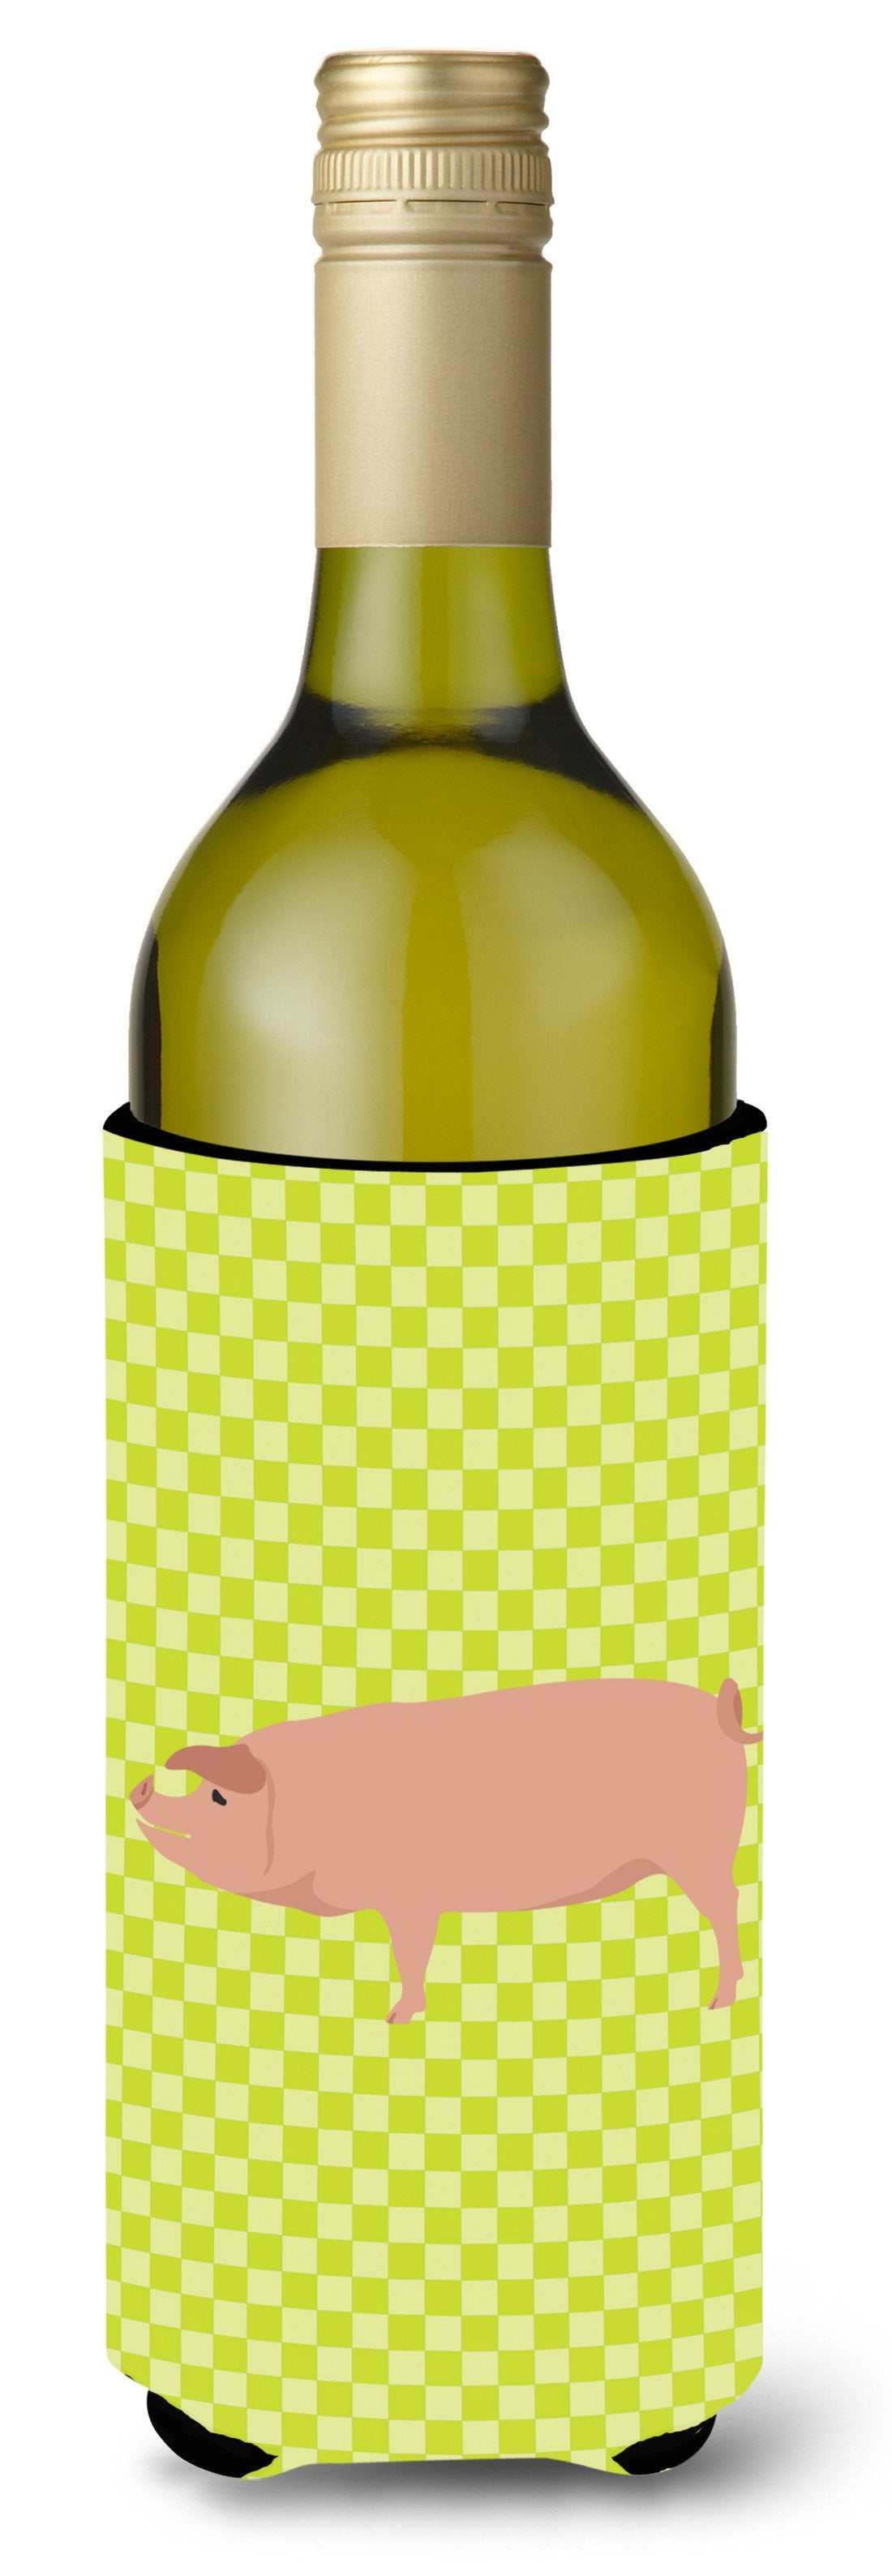 American Landrace Pig Green Wine Bottle Beverge Insulator Hugger BB7758LITERK by Caroline's Treasures